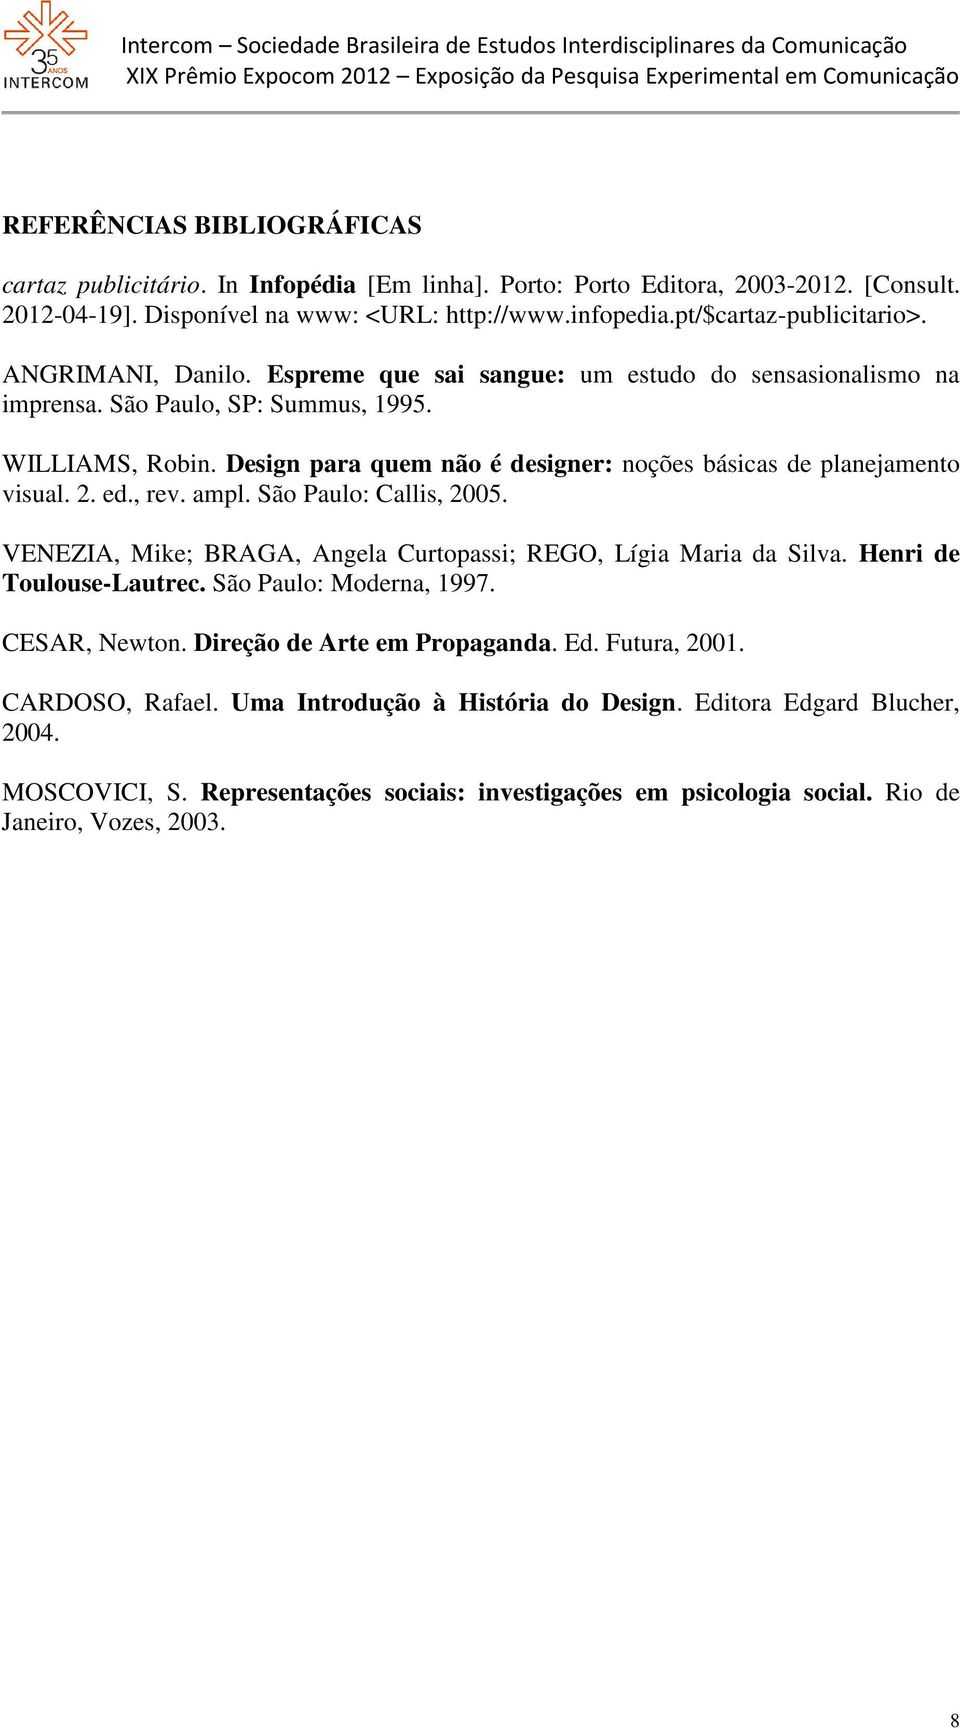 Design para quem não é designer: noções básicas de planejamento visual. 2. ed., rev. ampl. São Paulo: Callis, 2005. VENEZIA, Mike; BRAGA, Angela Curtopassi; REGO, Lígia Maria da Silva.